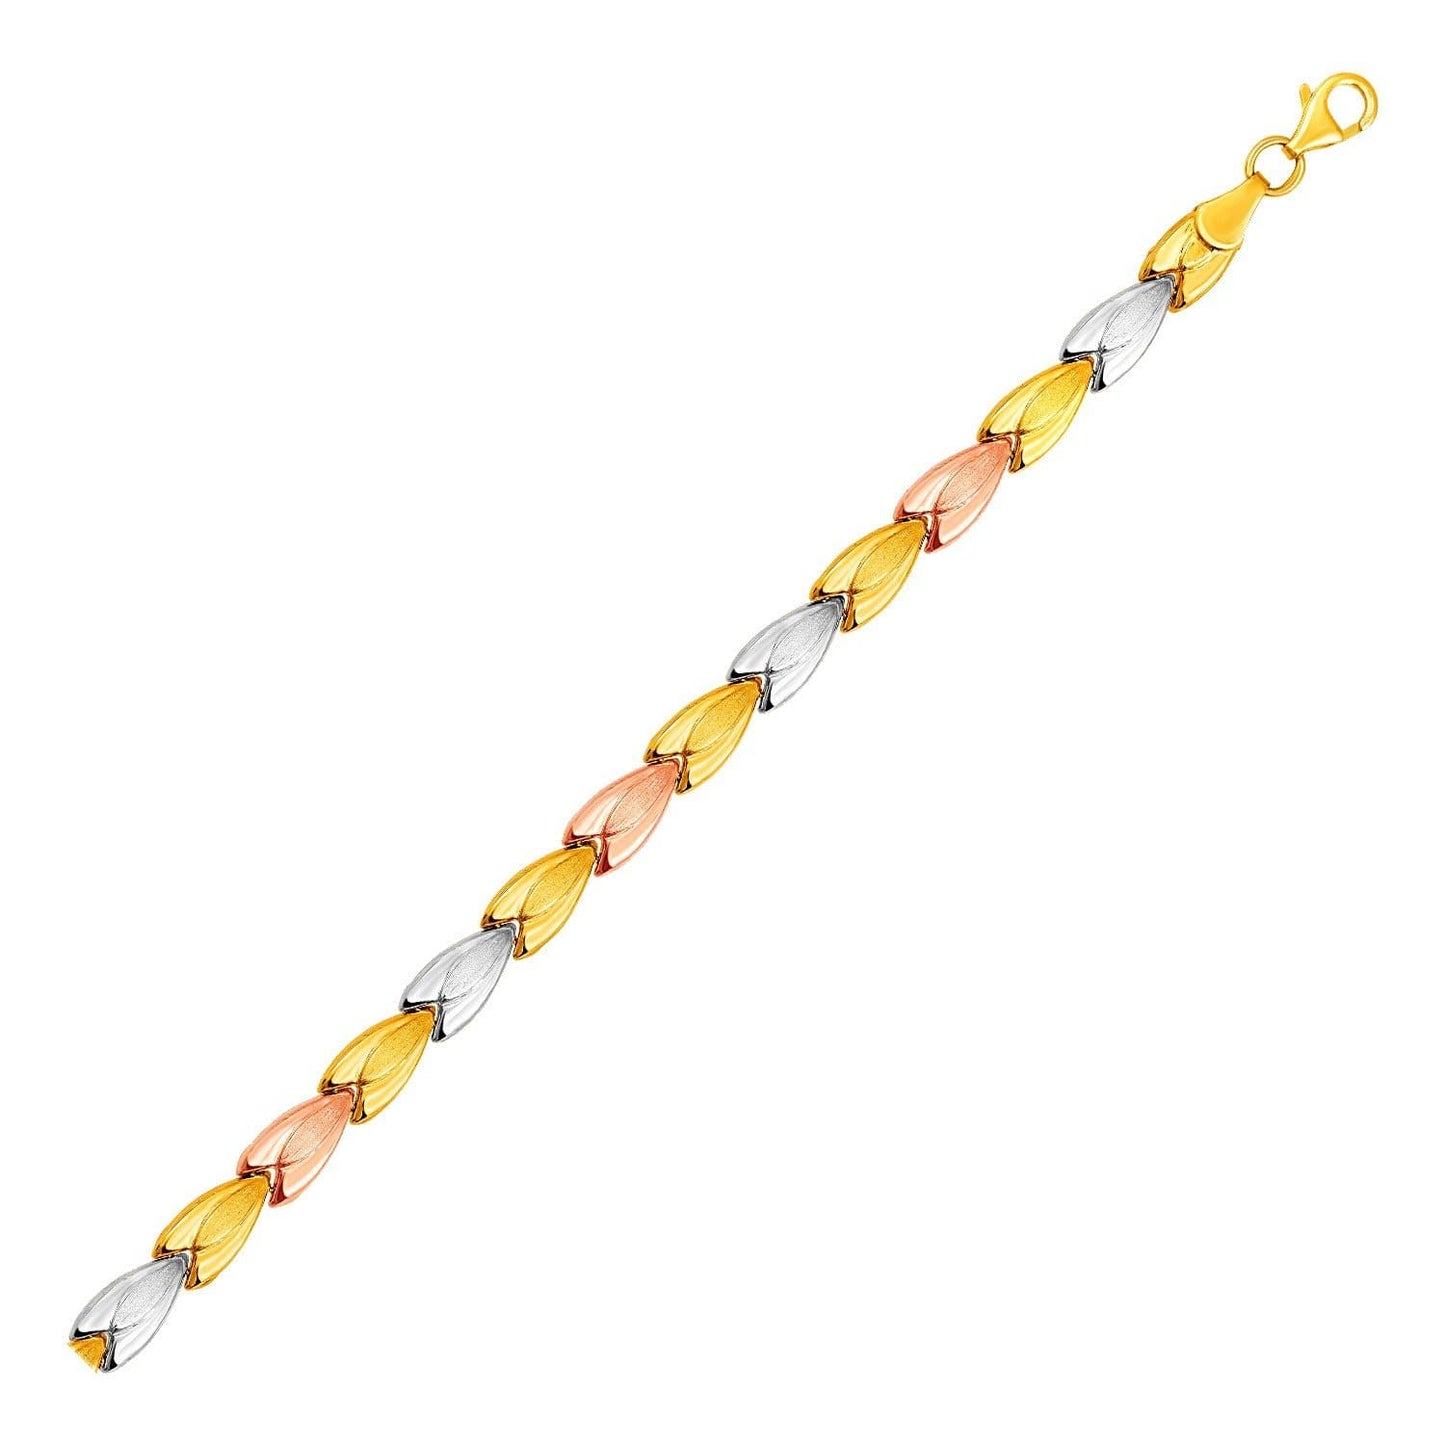 Graduated Flower Link Bracelet in 14k Tri Color Gold